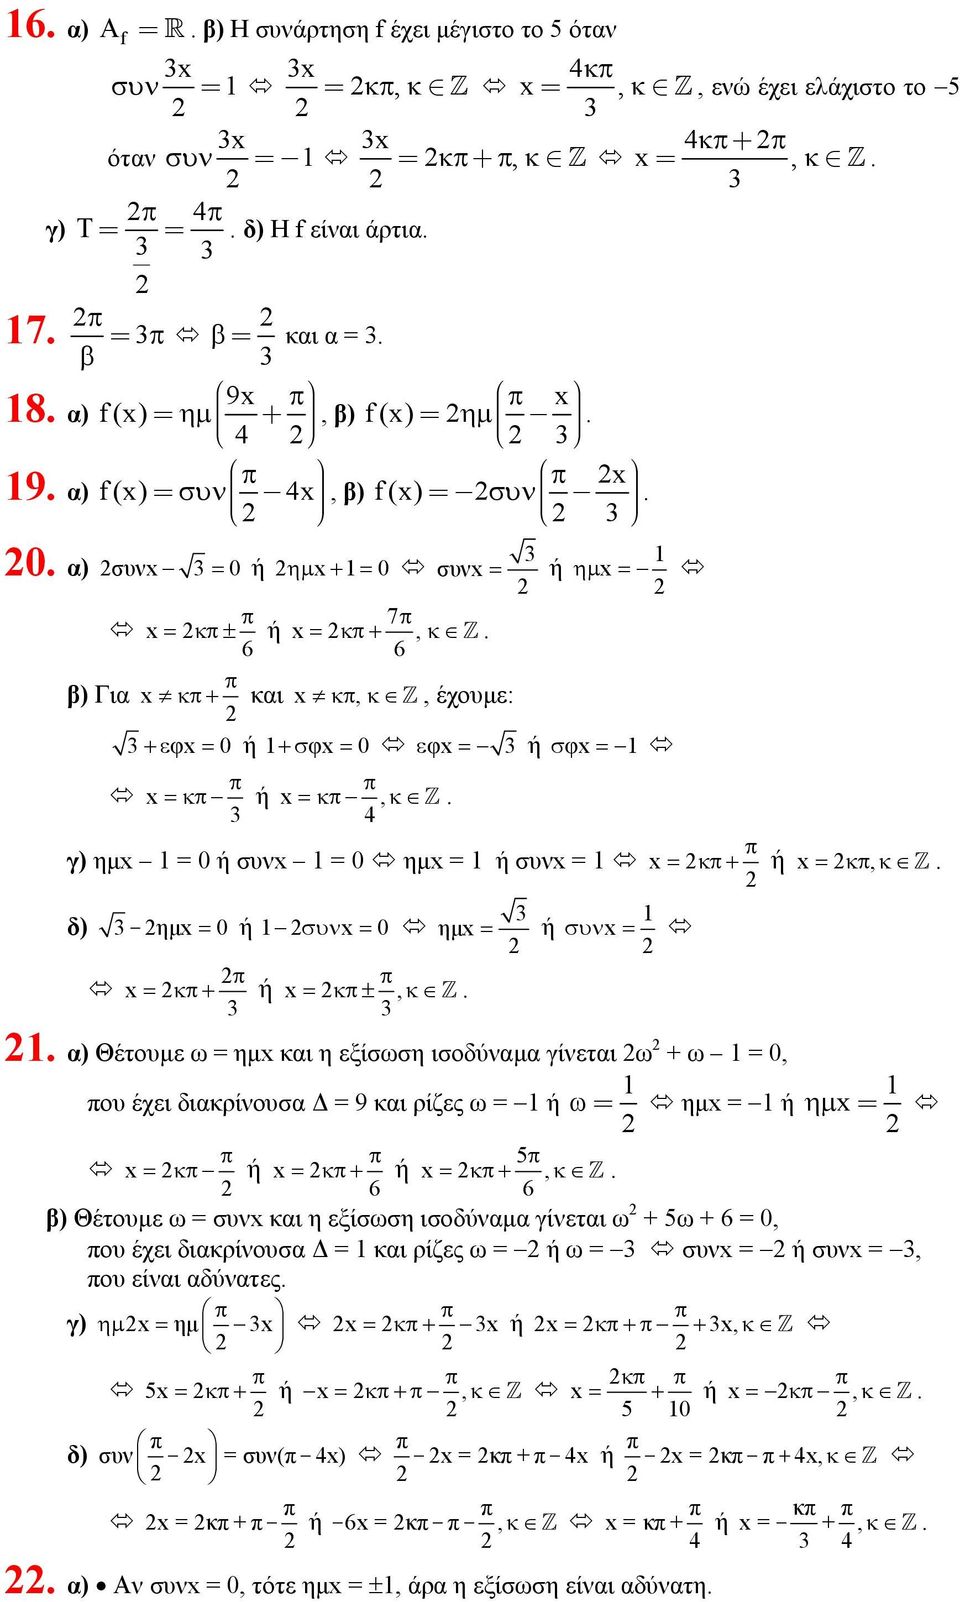 = x =κ ή x =κ, κ Z 4 γ) ηµx = 0 ή συνx = 0 ηµx = ή συνx = x = κ + ή x = κ, κ Z δ) - ηµx = 0 ή συν x = 0 ηµx = ή συν x = x = κ+ ή x = κ±, κ Z α) Θέτυµε ω = ηµx και η εξίσωση ισδύναµα γίνεται ω + ω =